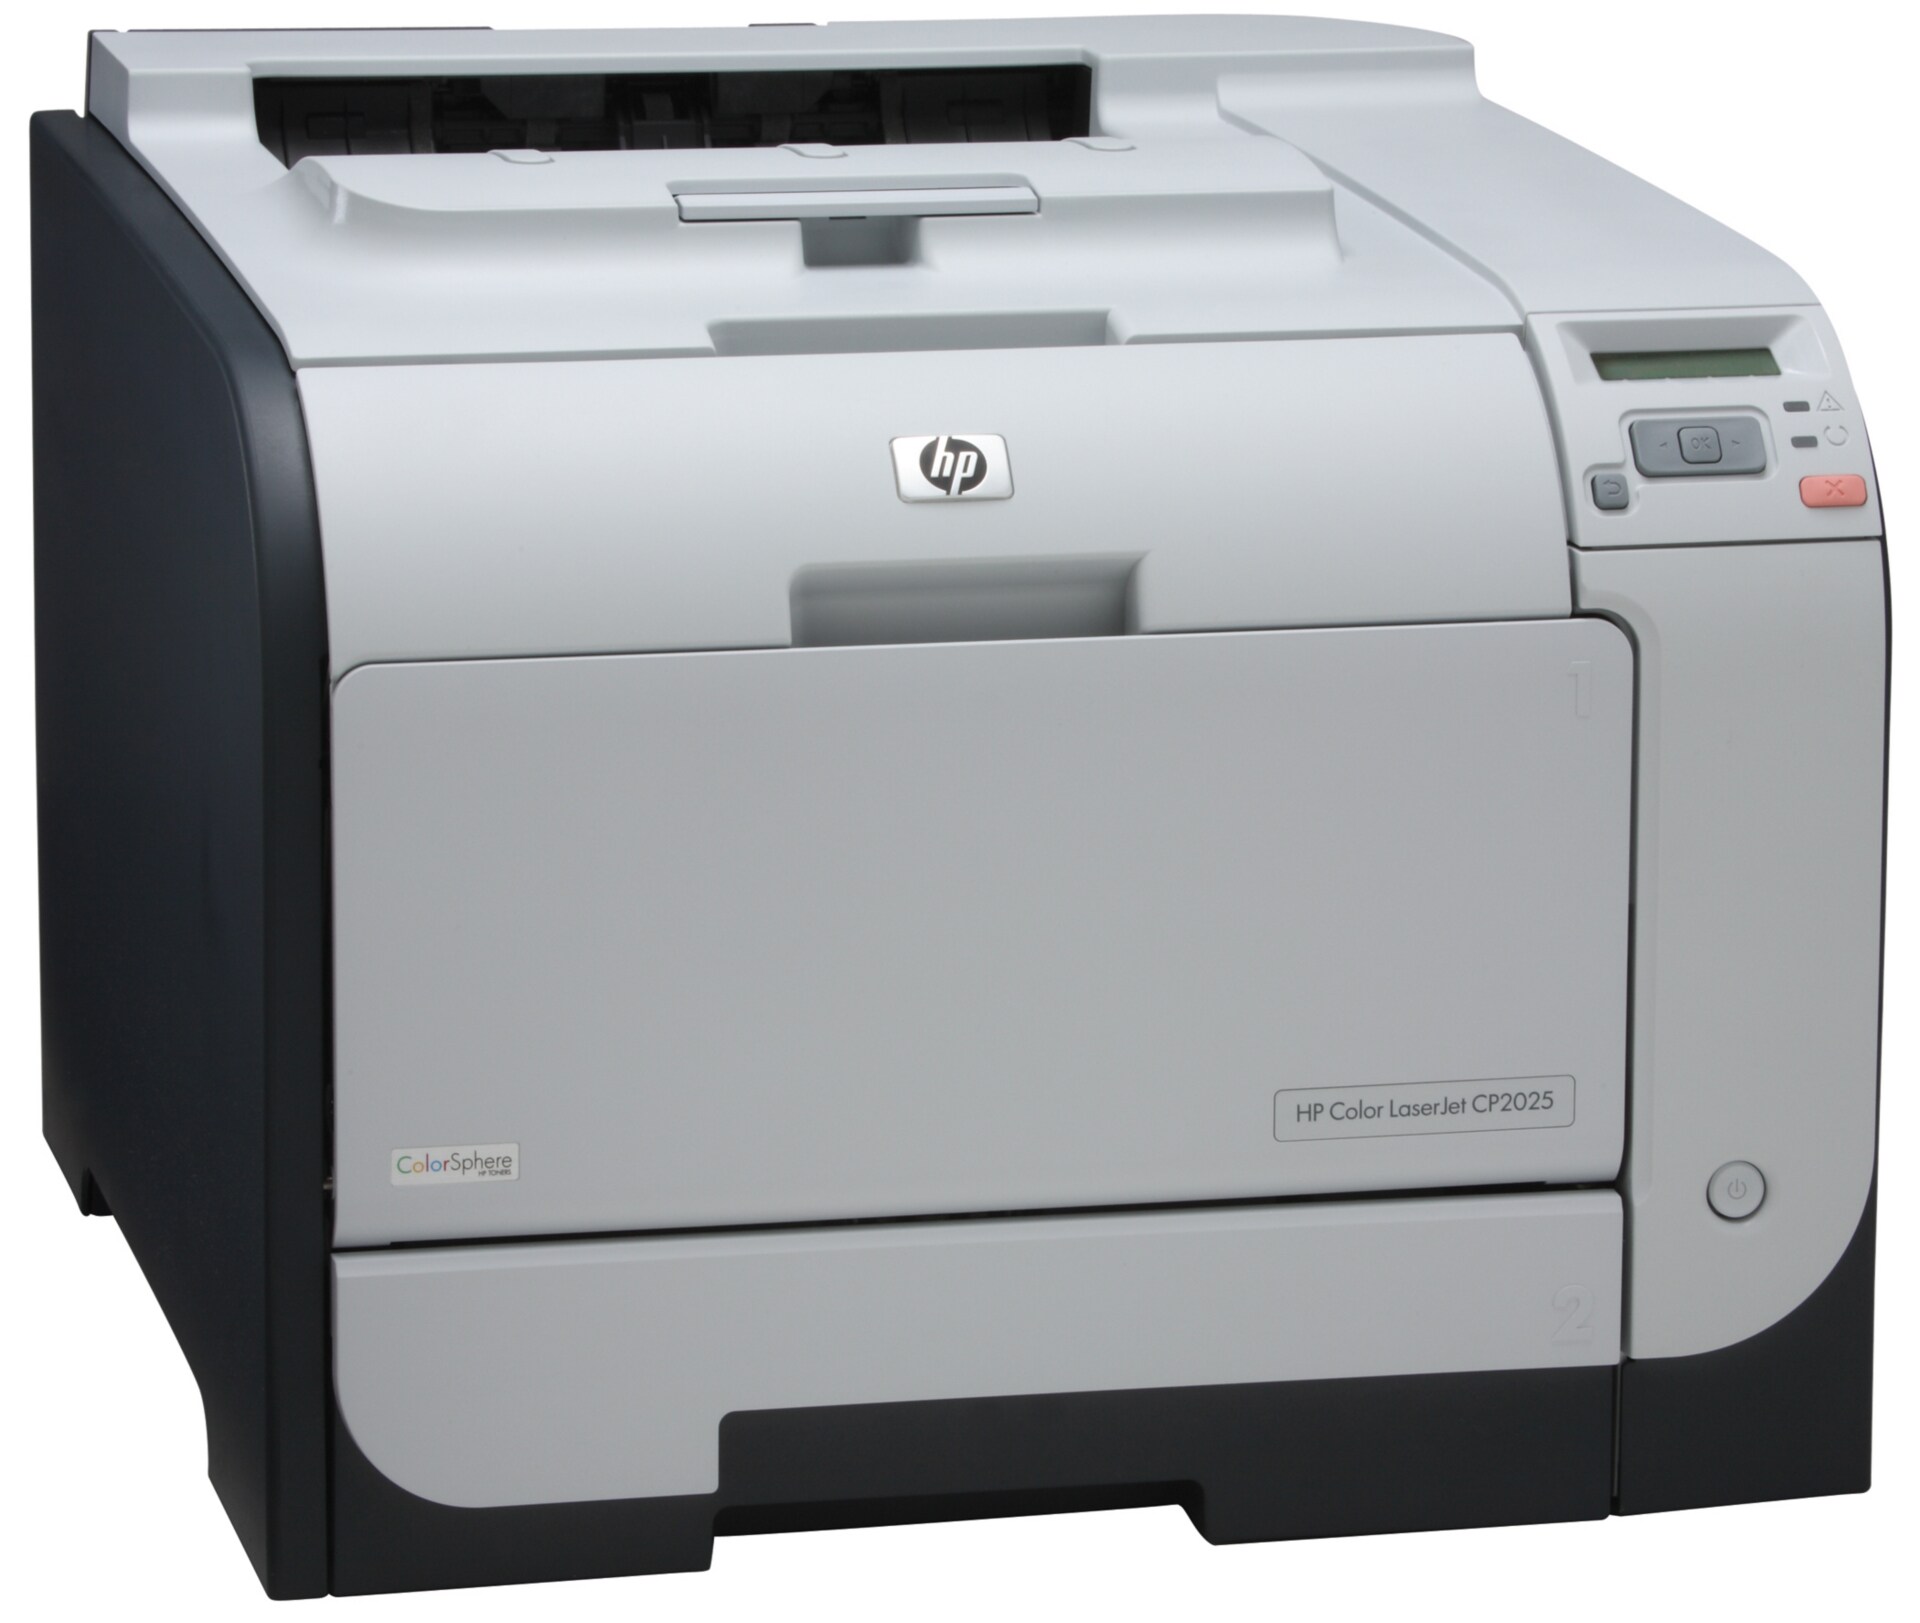 HP Color LaserJet CP2025 printer